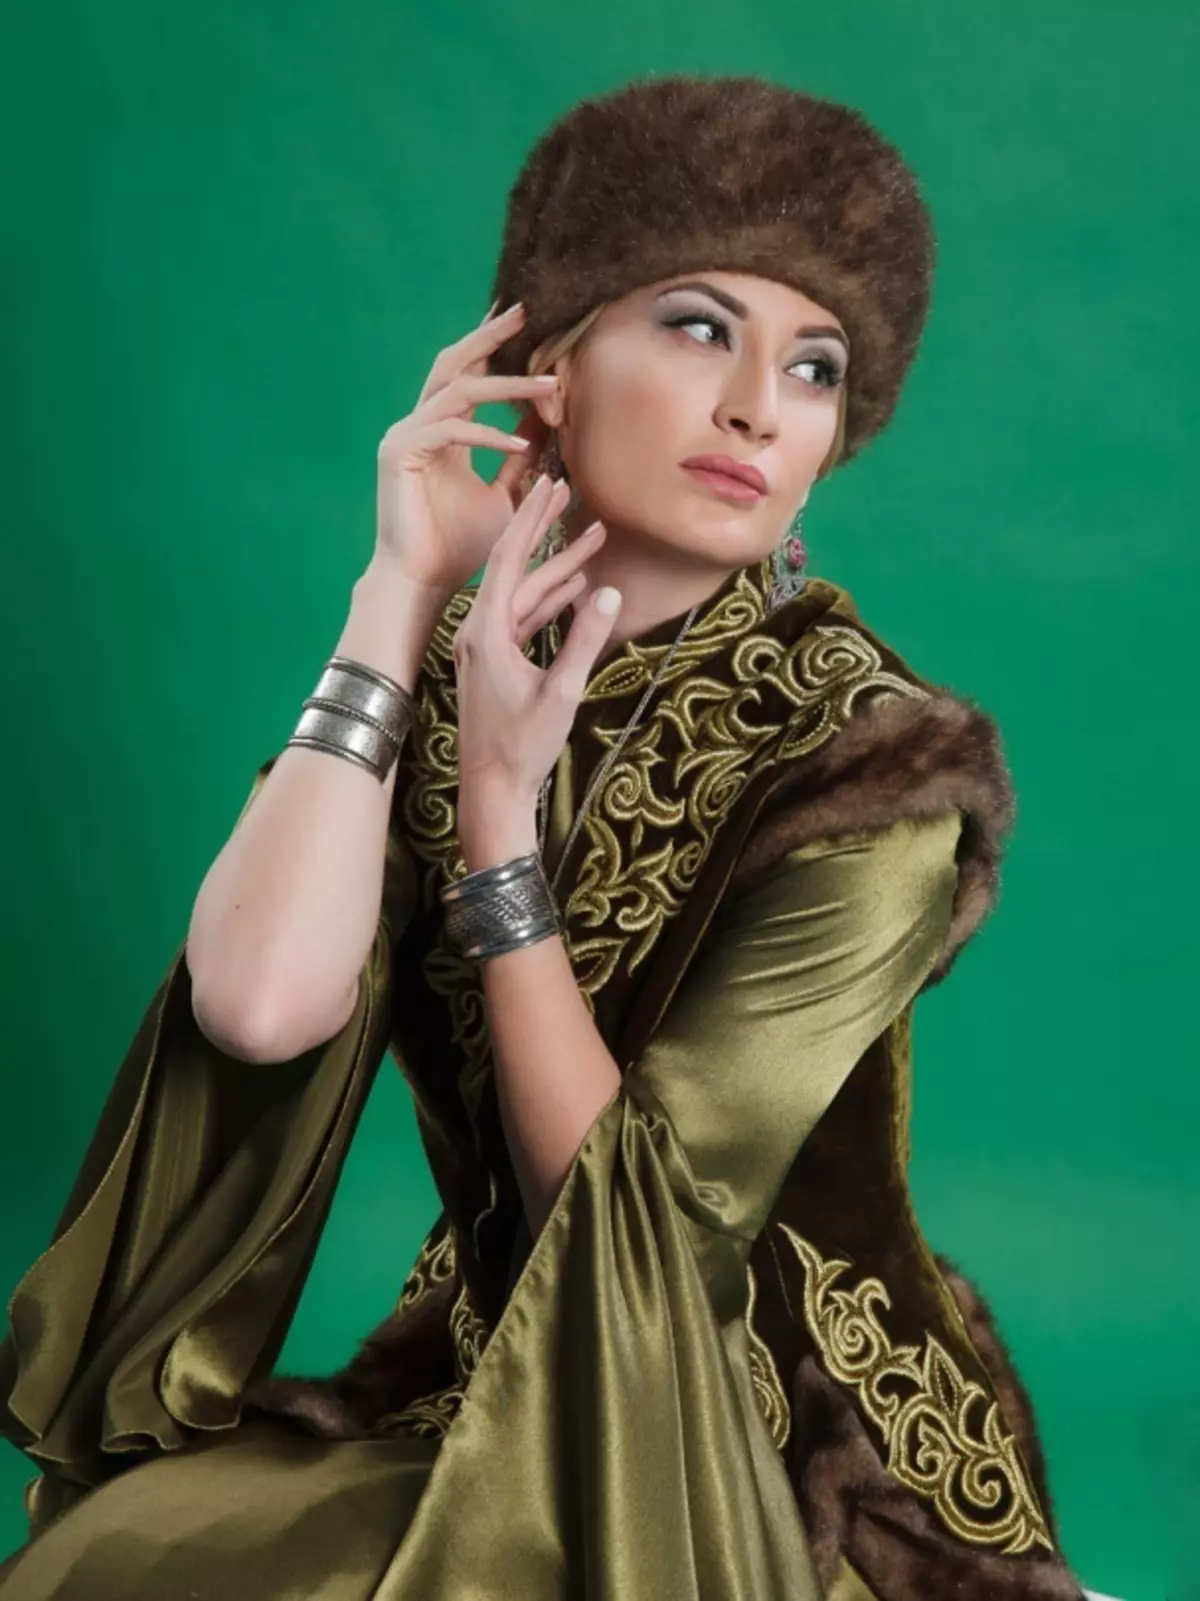 Trang phục quốc gia Kazakhstan (68 ảnh): Nữ trang phục truyền thống Kazakhstan, trang phục dân gian cho cô gái từ Kazakhstan 842_8